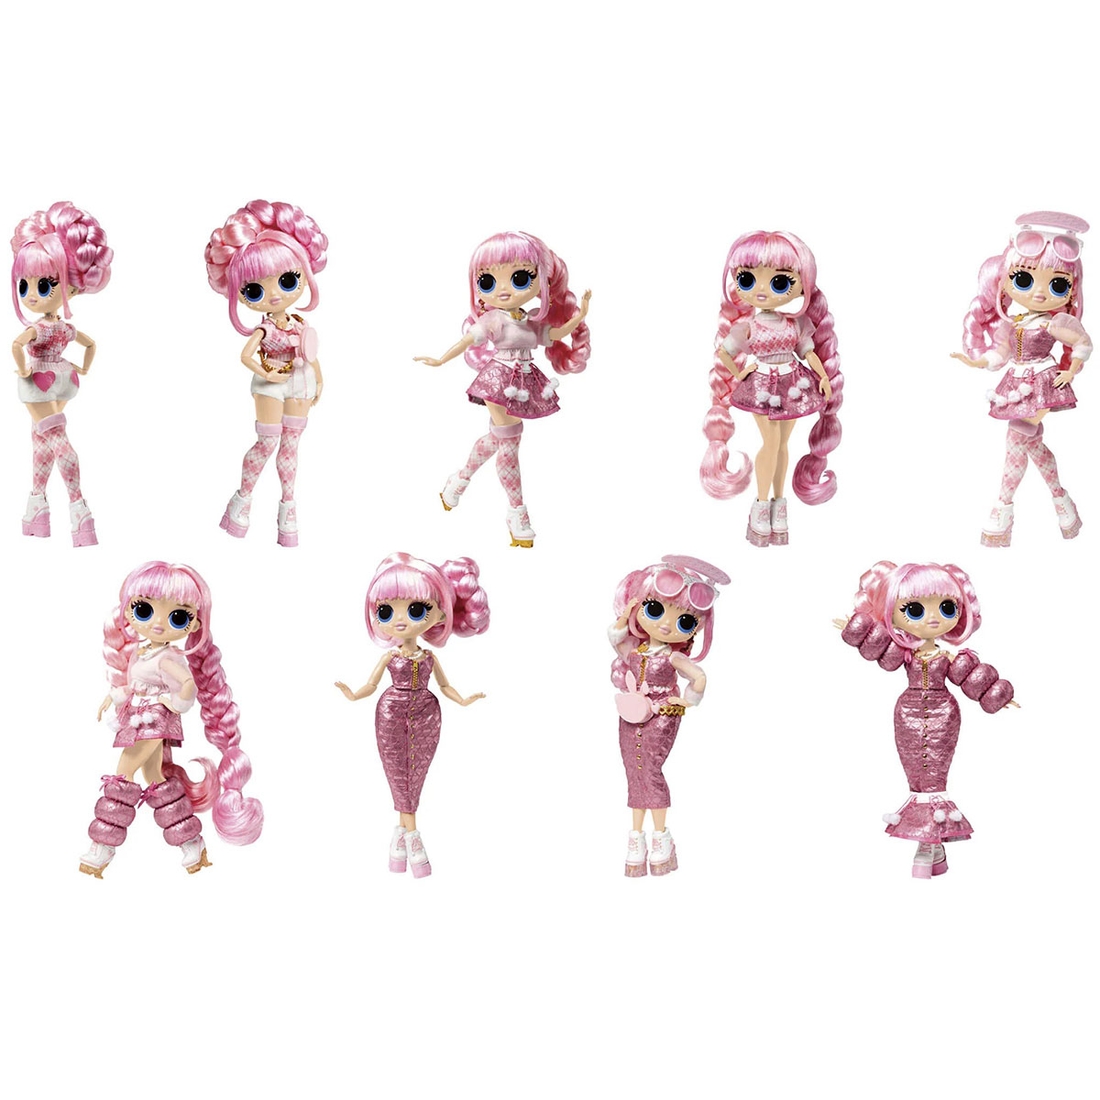 Фото Игровой набор с куклой L.O.L. SURPRISE! серии "O.M.G. Fashion Show" – СТИЛЬНАЯ ЛА РОУЗ 584322 25 см Разноцветный (6900007303286)